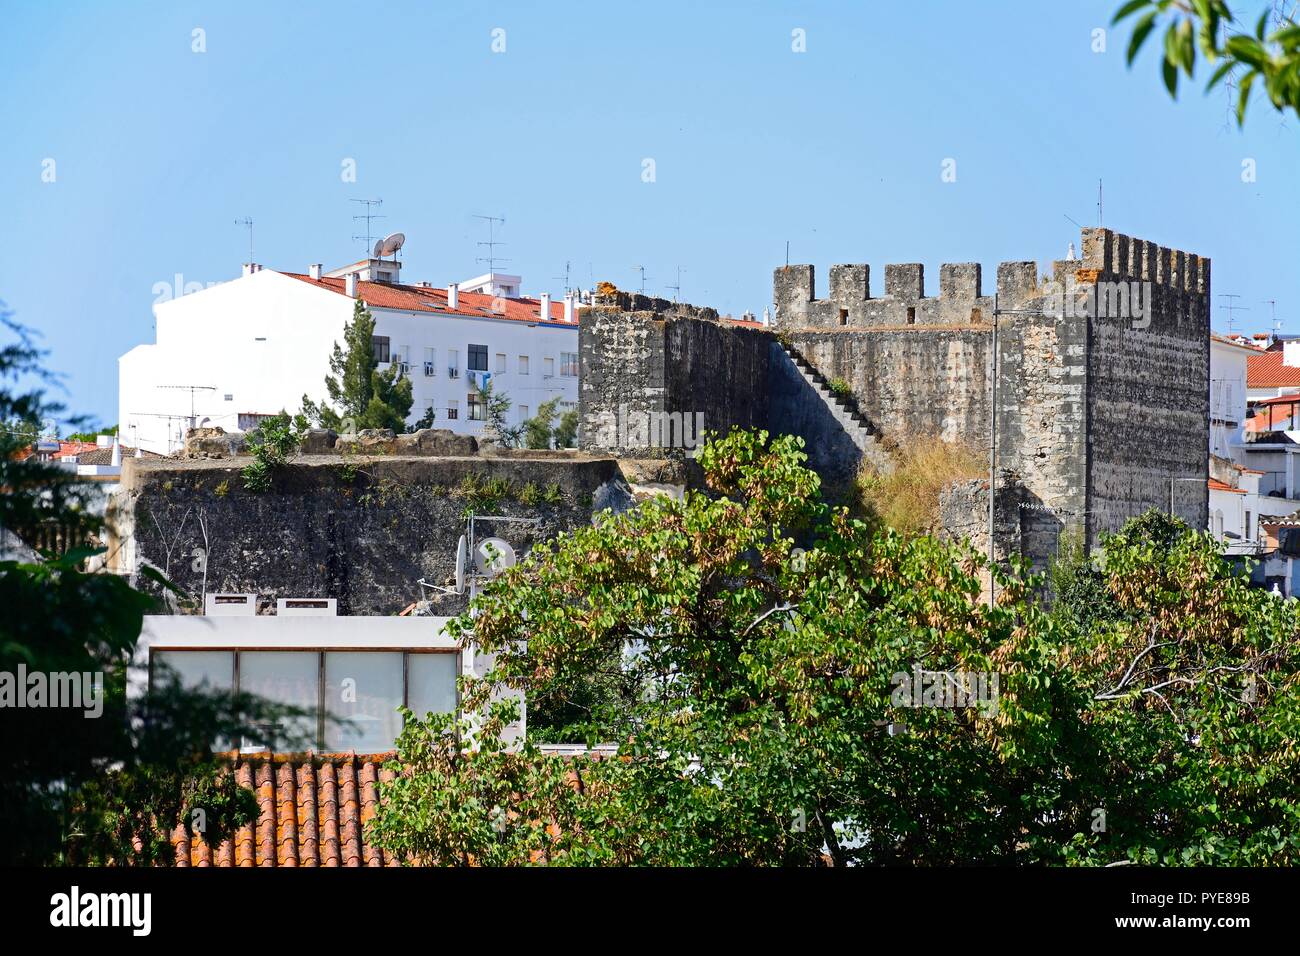 Vista di una parte del castello merlature con edifici del comune per la parte posteriore, Tavira, Algarve, Portogallo, dell'Europa. Foto Stock